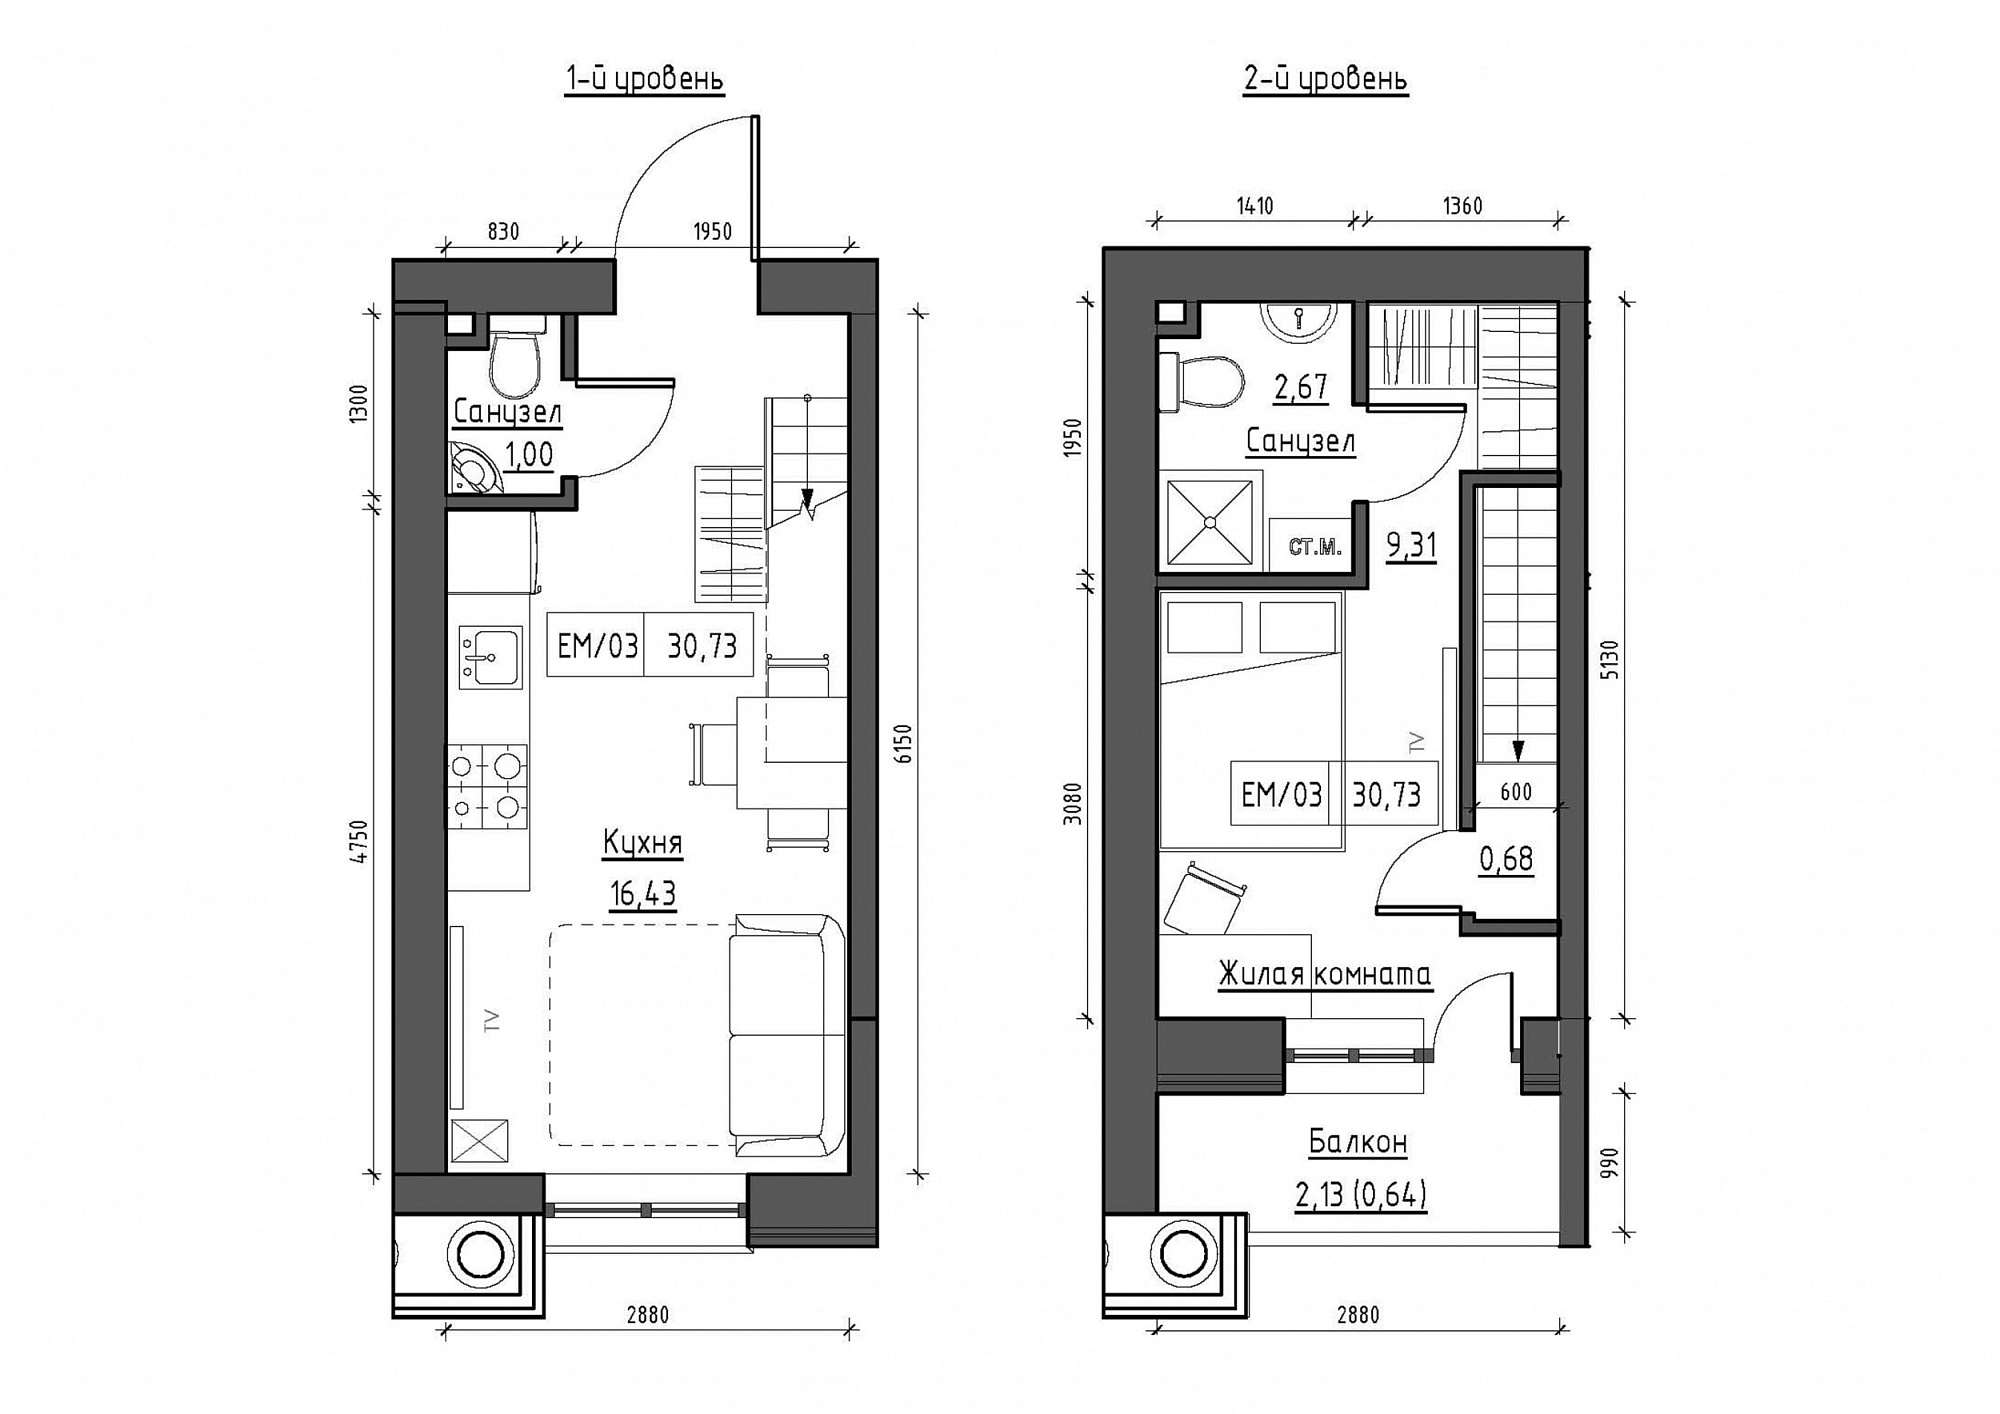 Planning 2-lvl flats area 30.73m2, KS-011-05/0010.